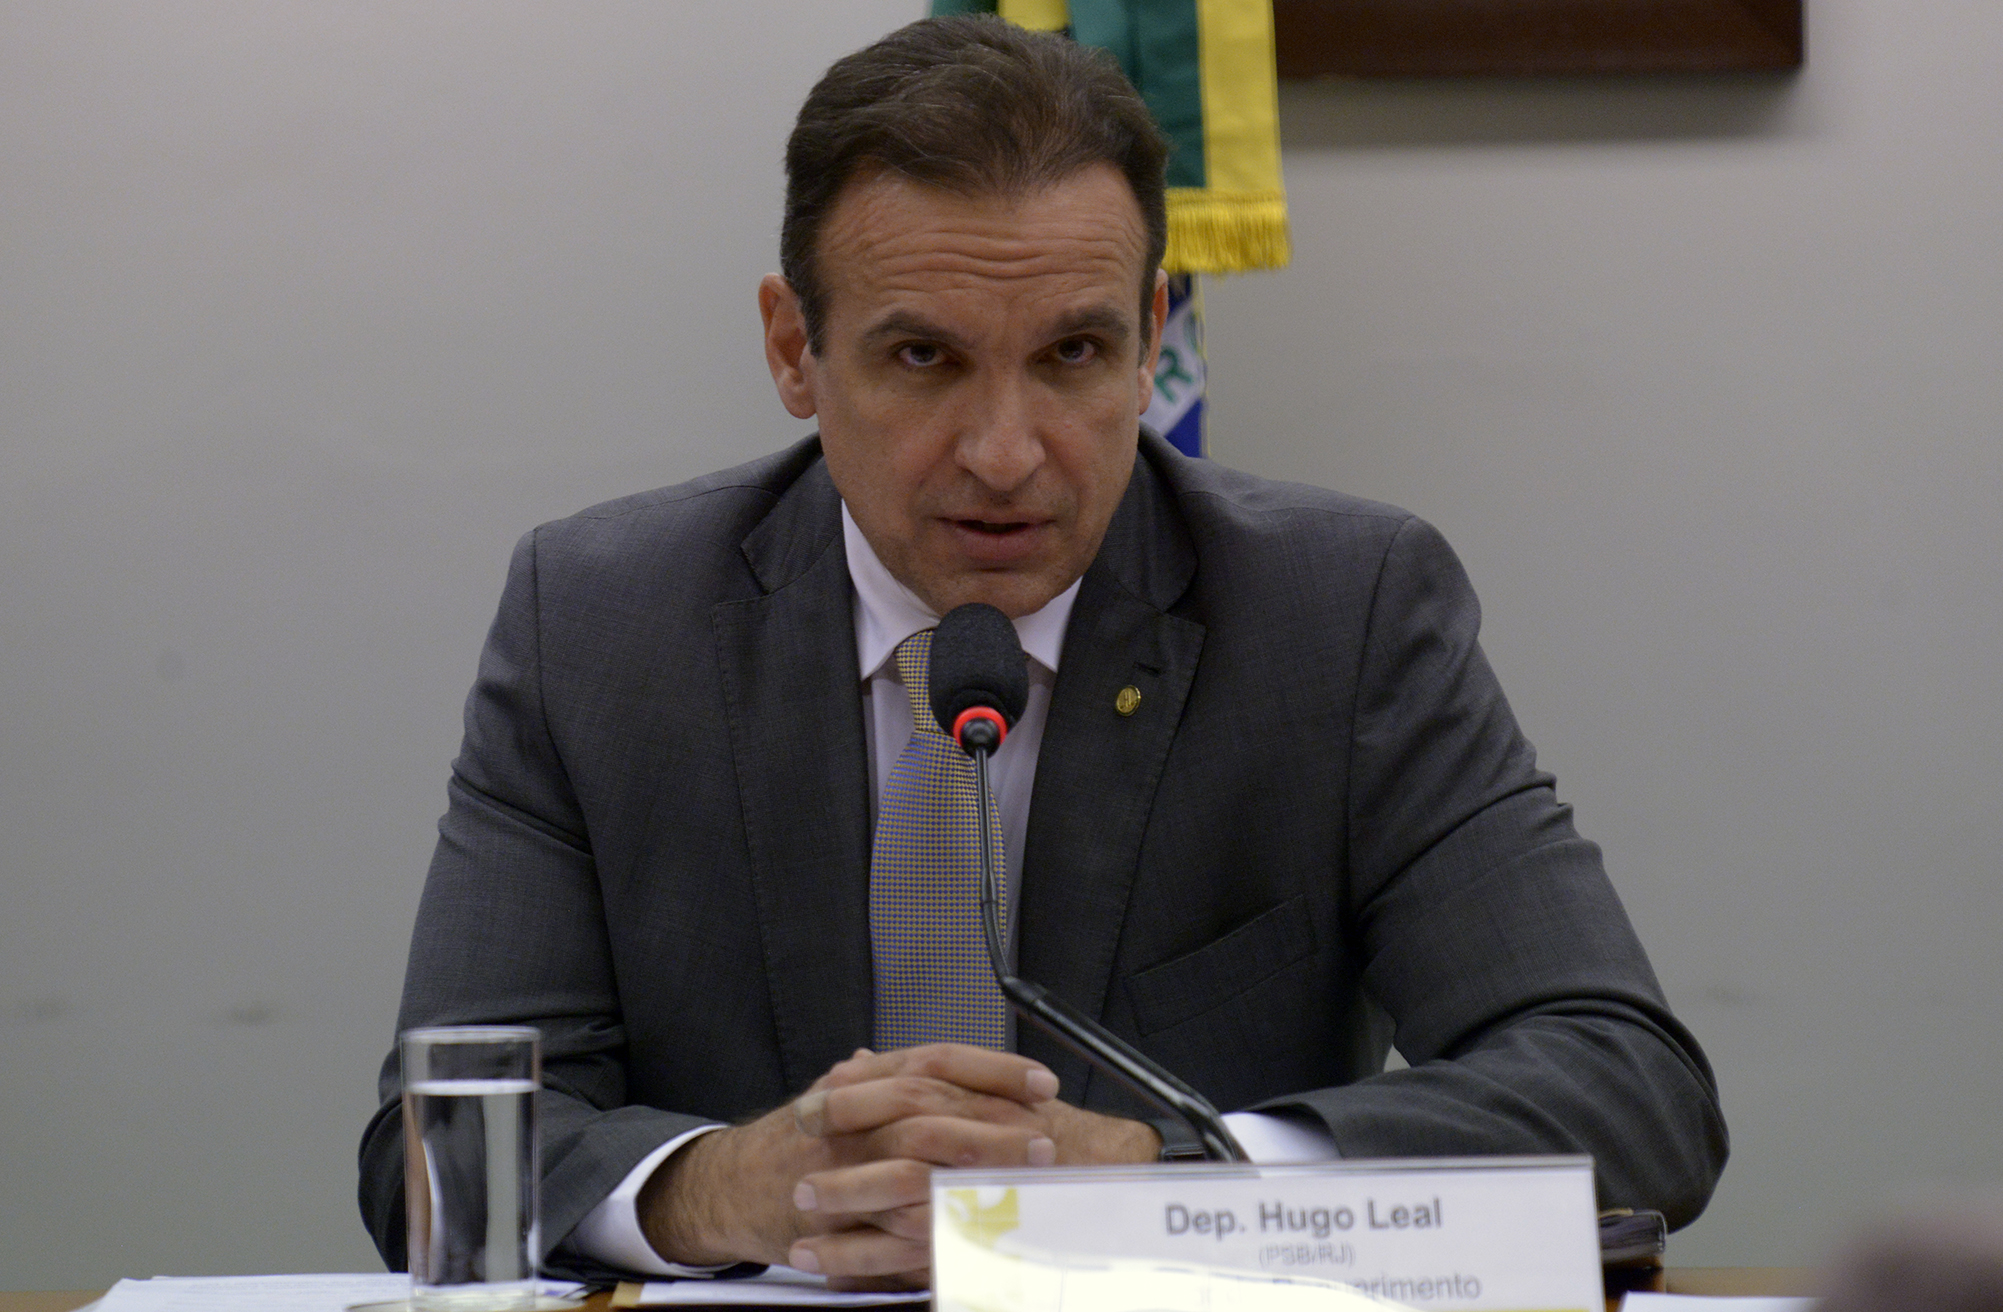 Deputado Hugo Leal (PSB-RJ), que apresentou o substitutivo.